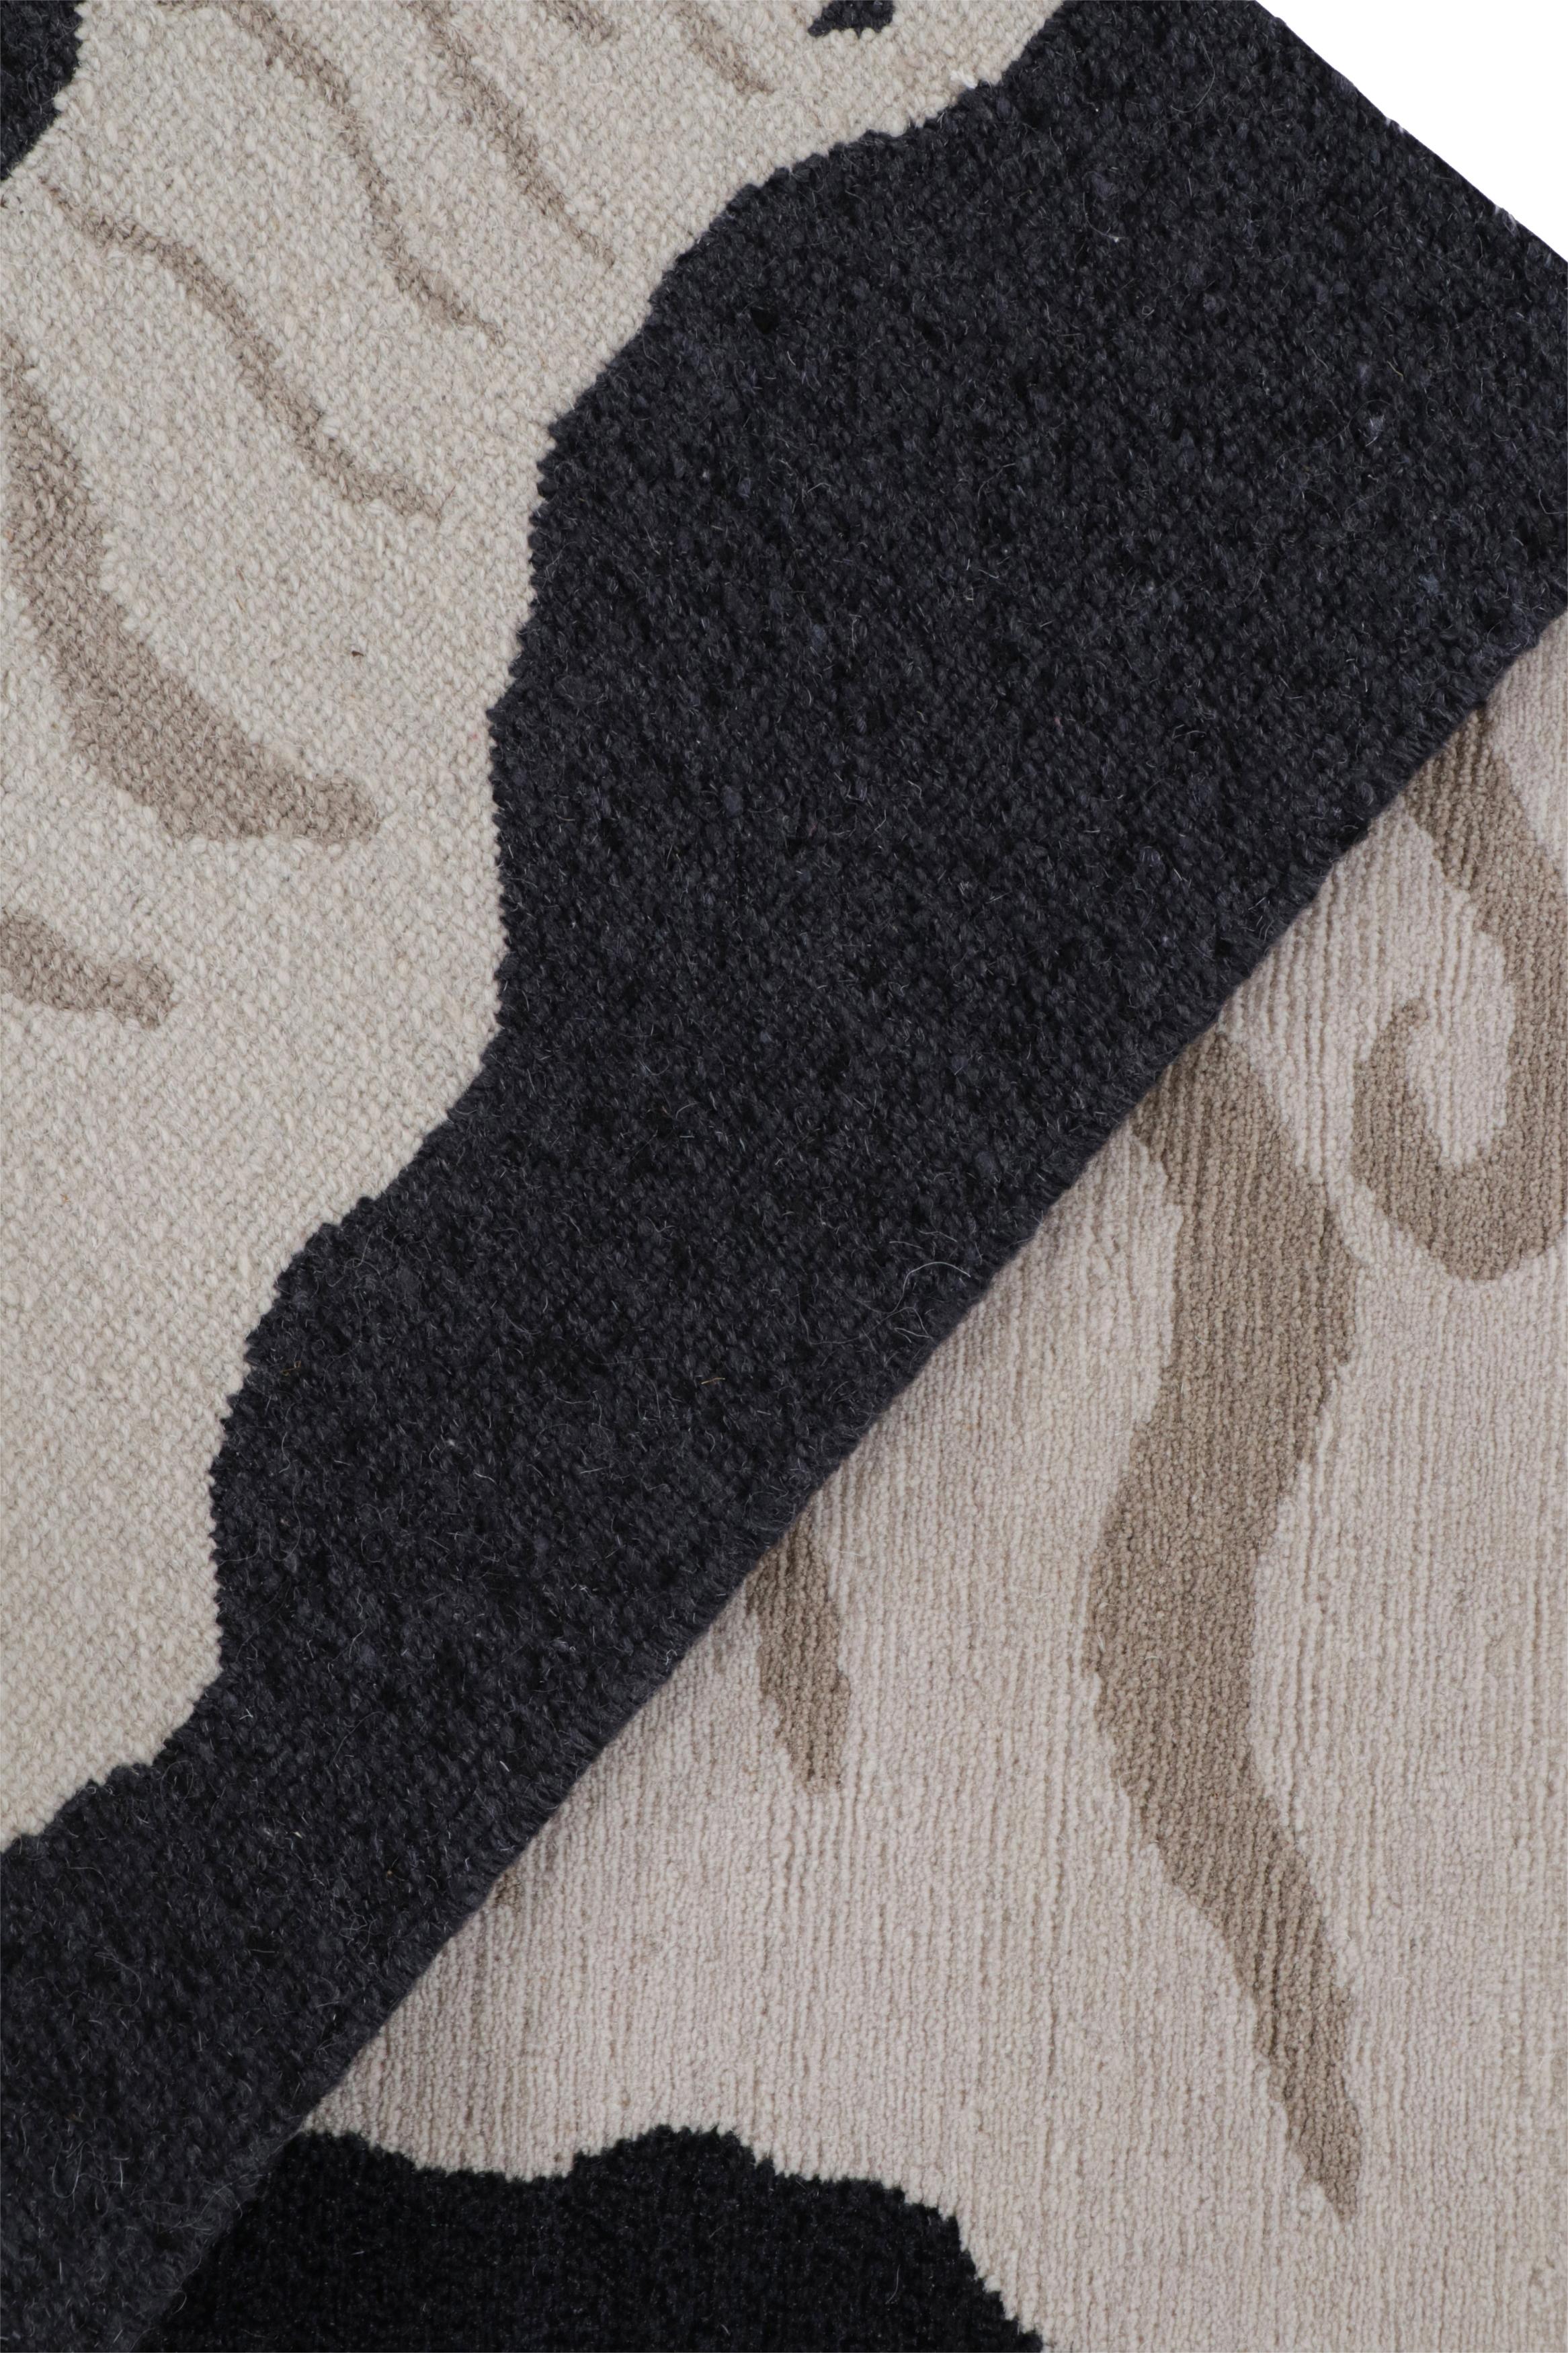 Rug & Kilim's Tigerfell-Teppich in Schwarz mit cremefarbenem und braunem Bild (Seide) im Angebot